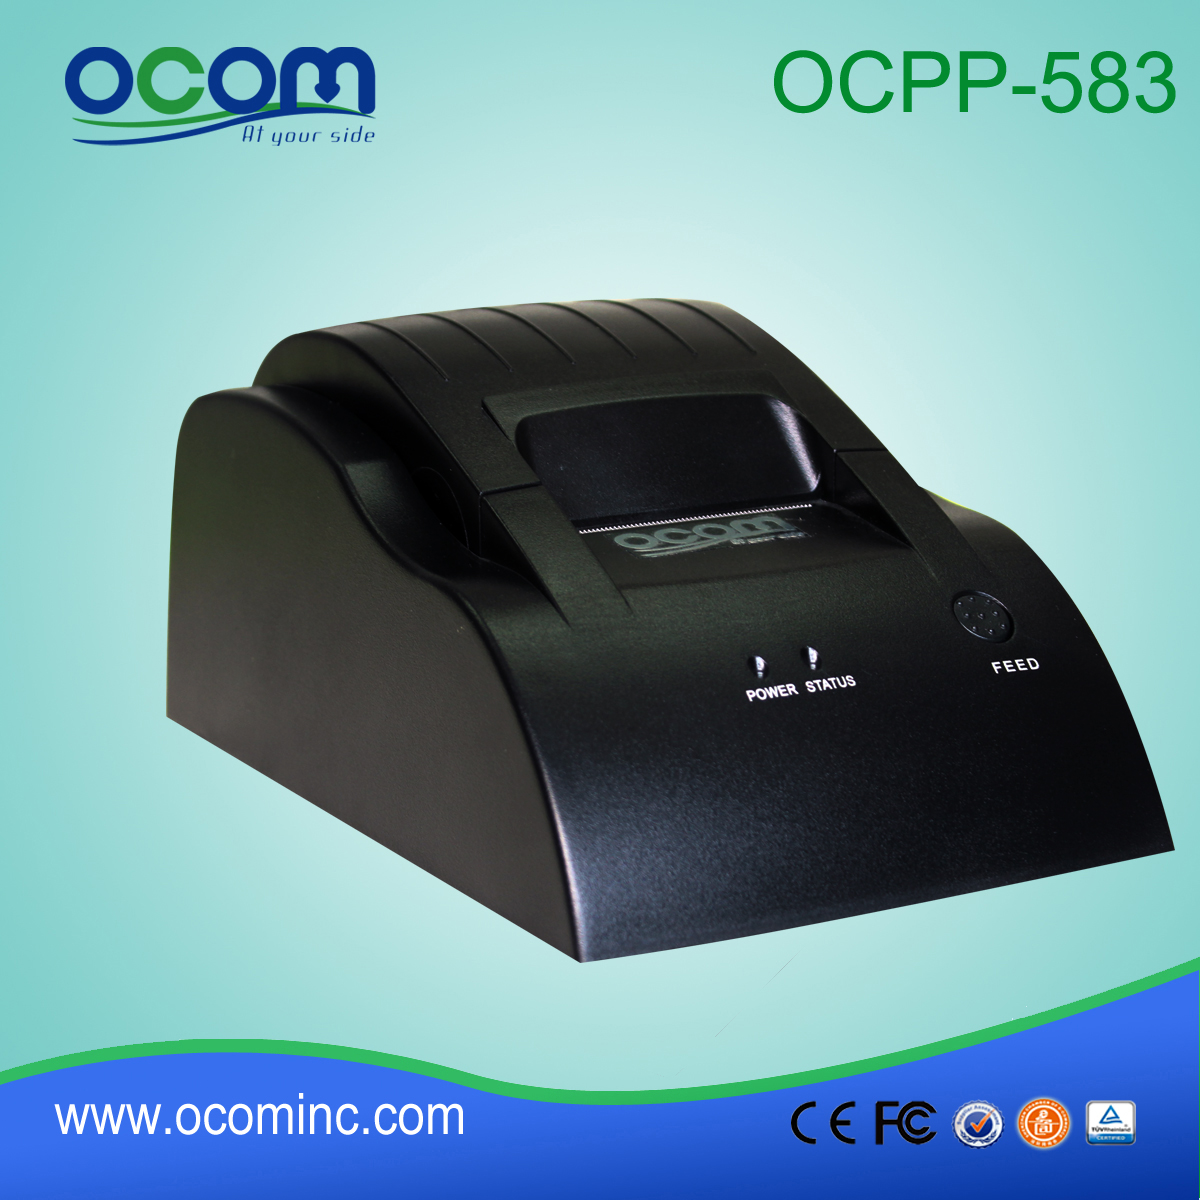 Basso costo piccolo POS ricevuta termica stampante-OCPP-583